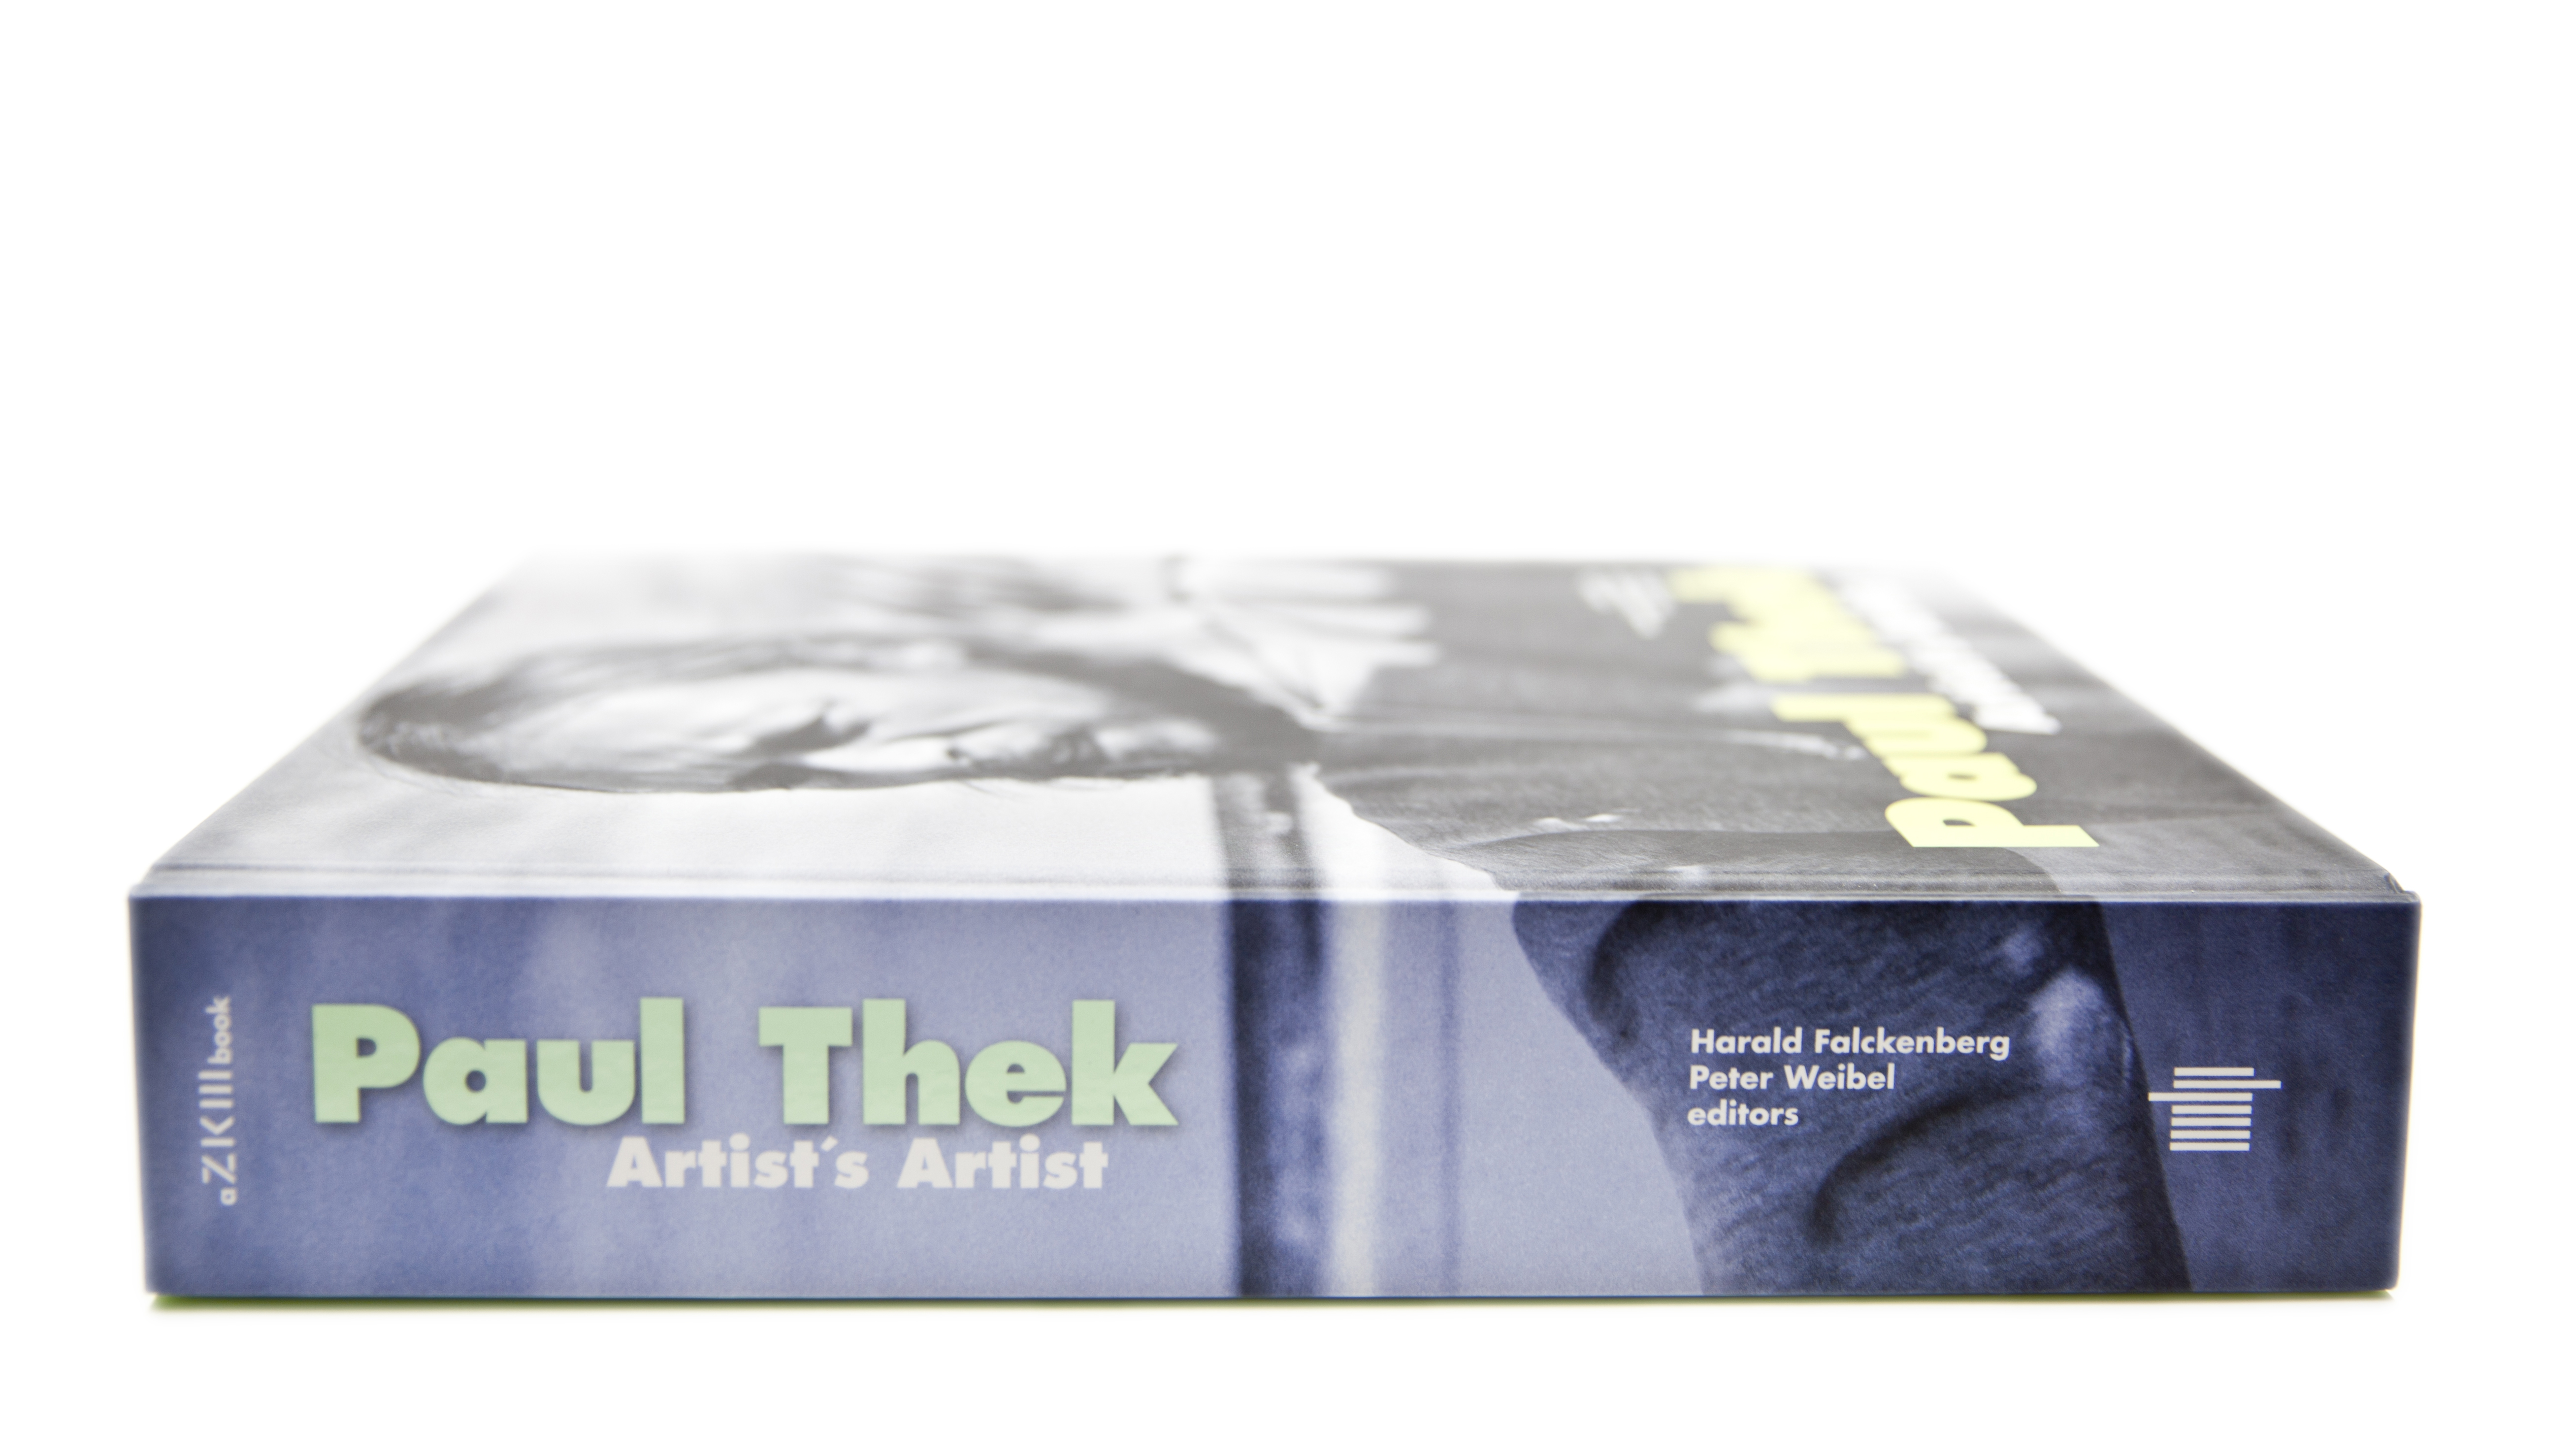 Paul Thek: Artist's Artist